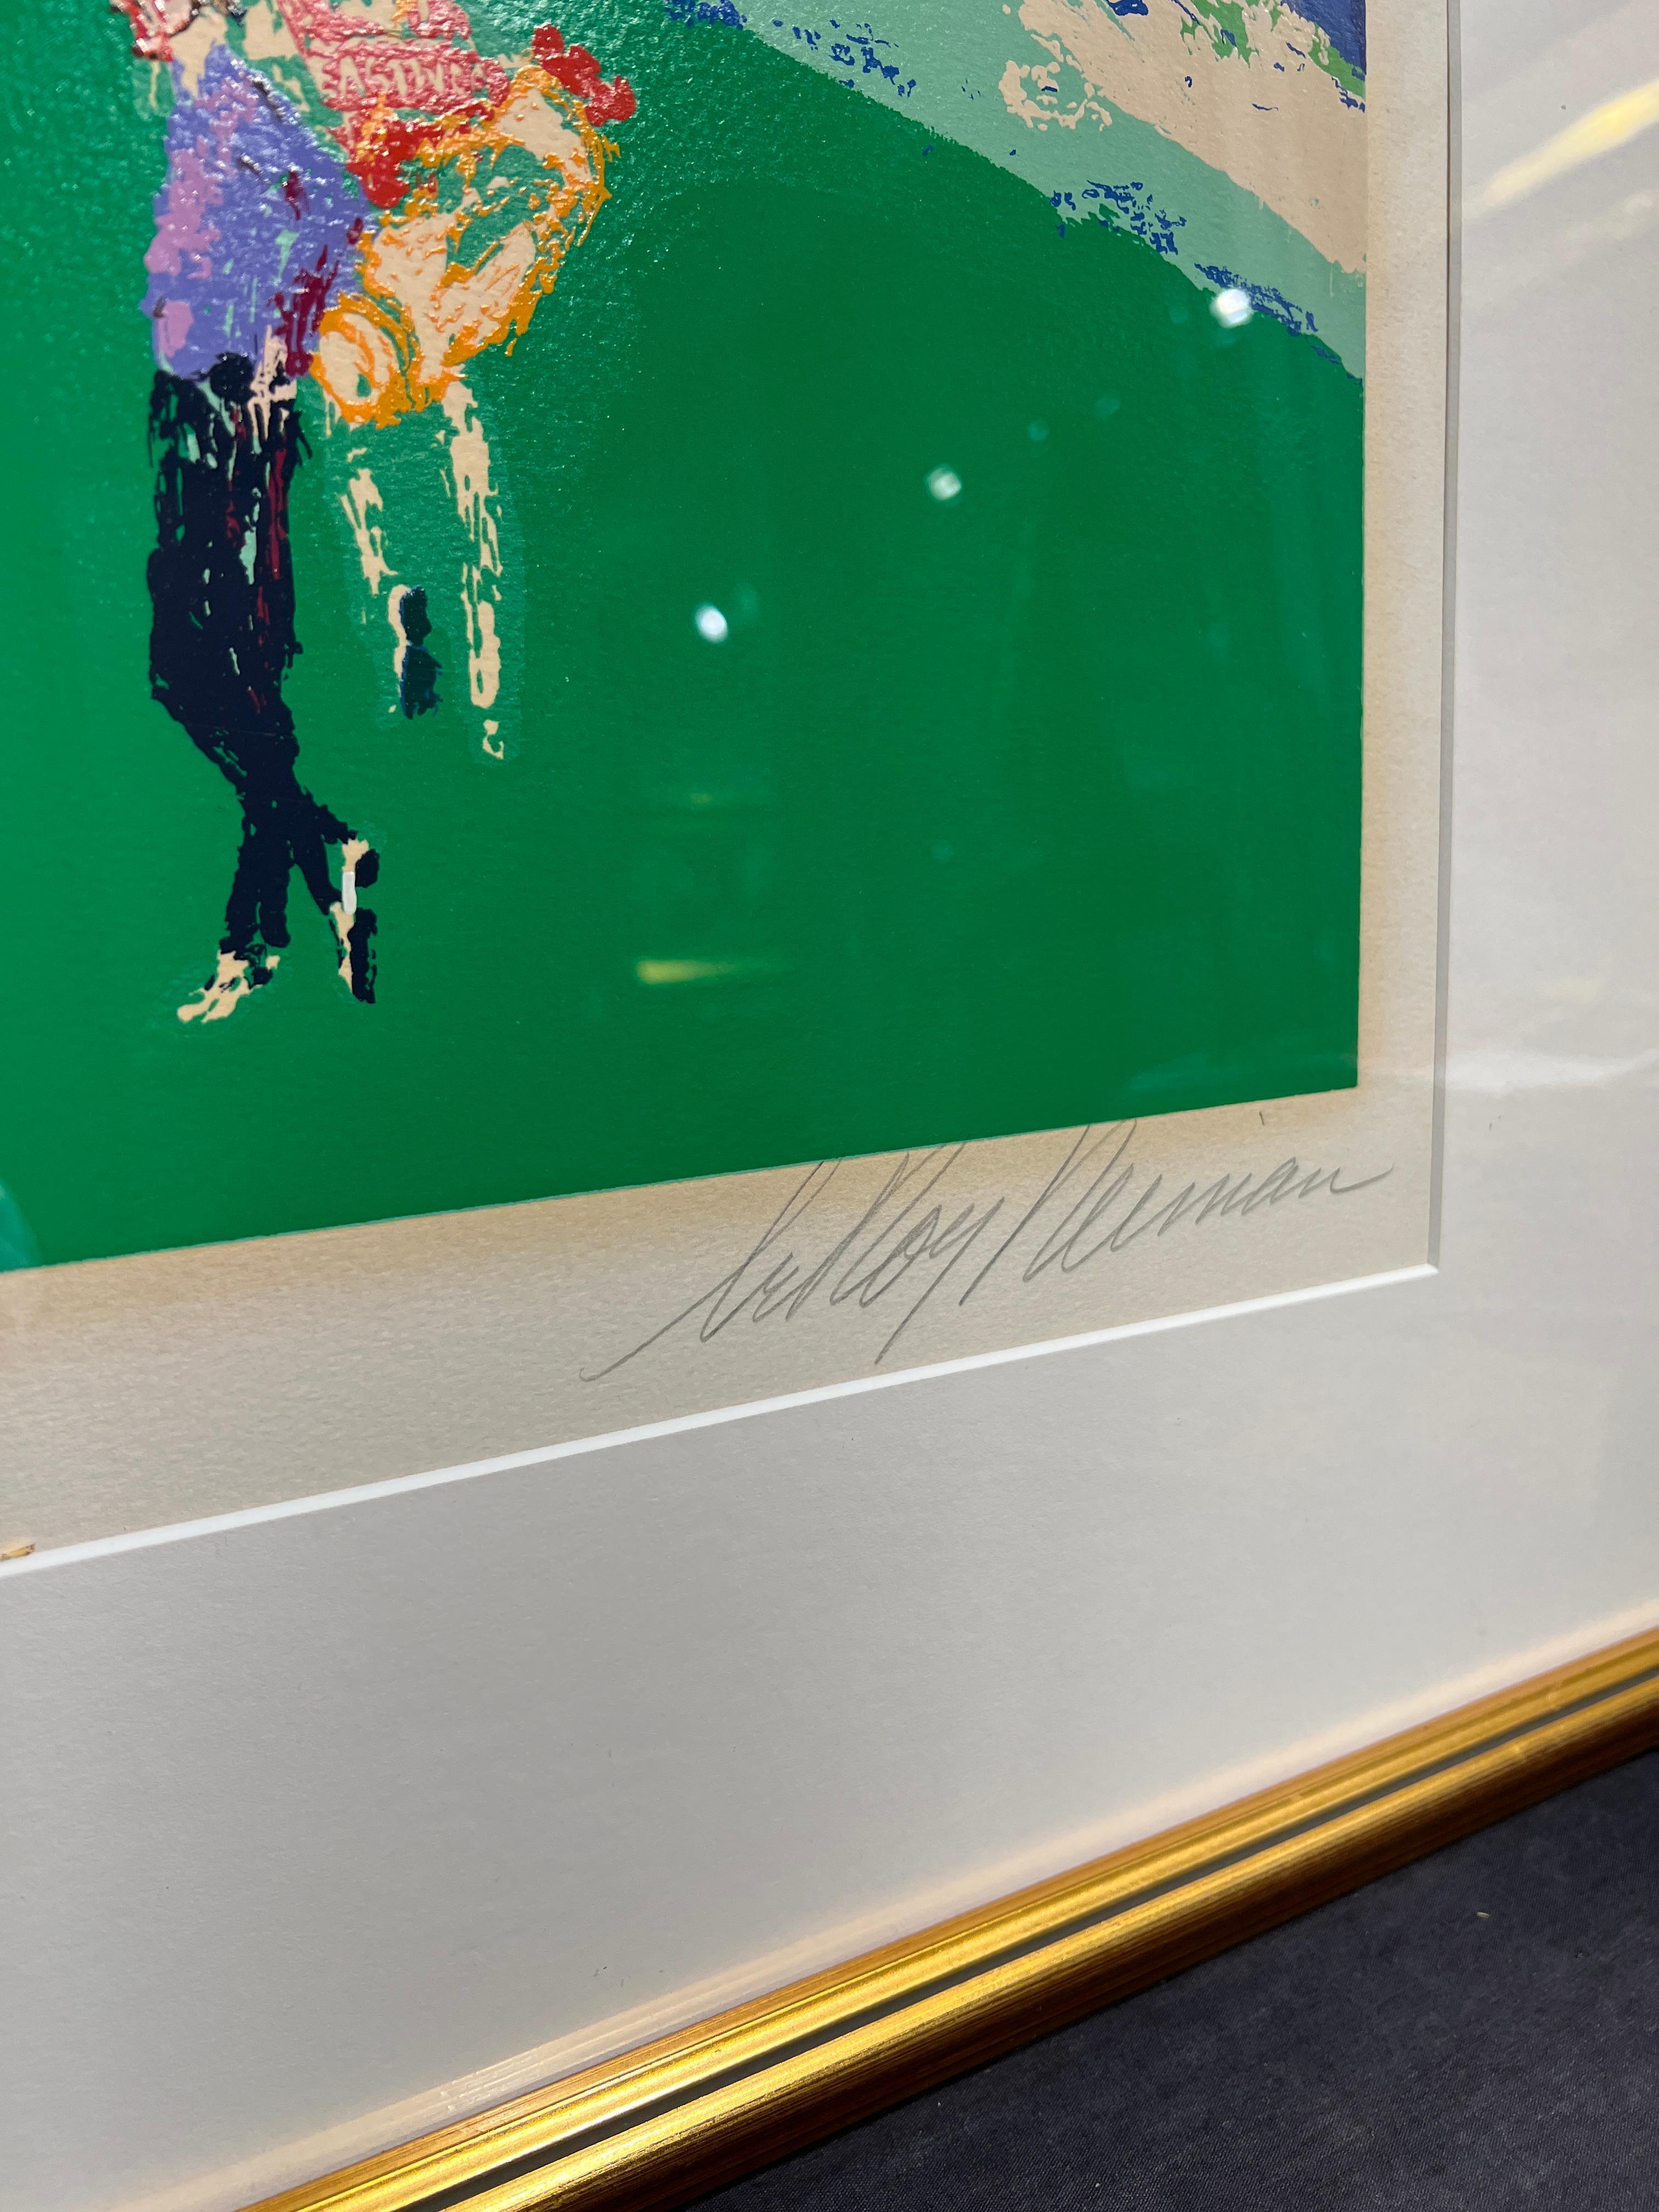 Das 18. Jahrhundert in Pebble Beach
LeRoy Neiman (Amerikaner, 1921-2012)
Signiert mit Bleistift unten rechts
Auflage 176/400 unten links
26 x 43 Zoll
37,25 x 54,5 Zoll mit Rahmen

Bekannt für seine leuchtenden, farbenfrohen Gemälde und Siebdrucke